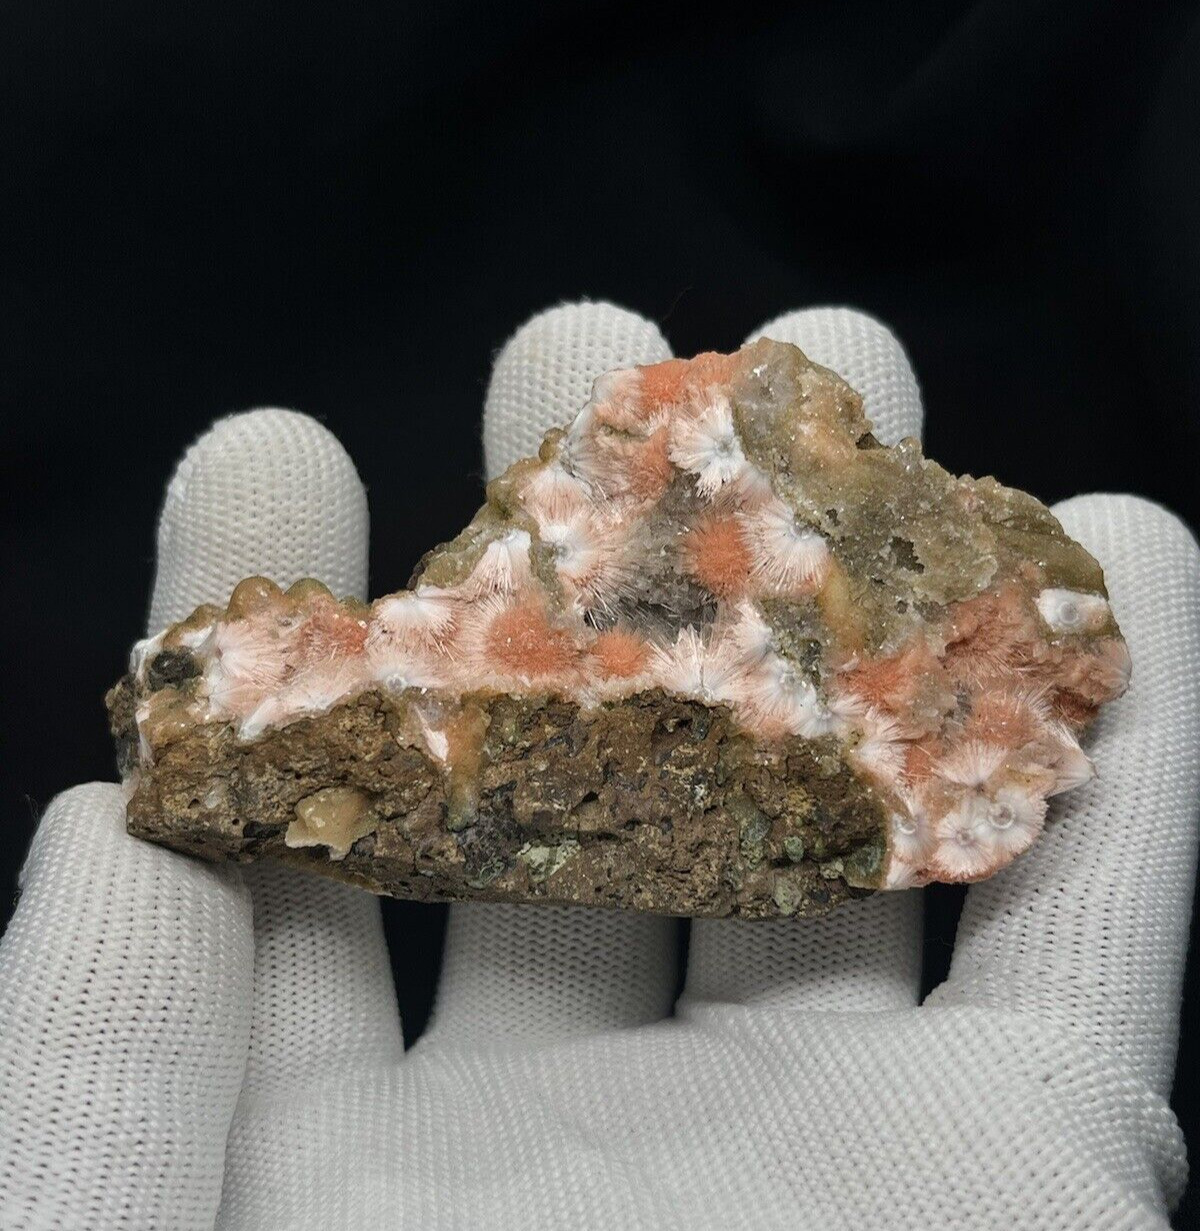 Beautifull Orange Thomsonite , Rare Find From India - Rare Mineral Specimen..